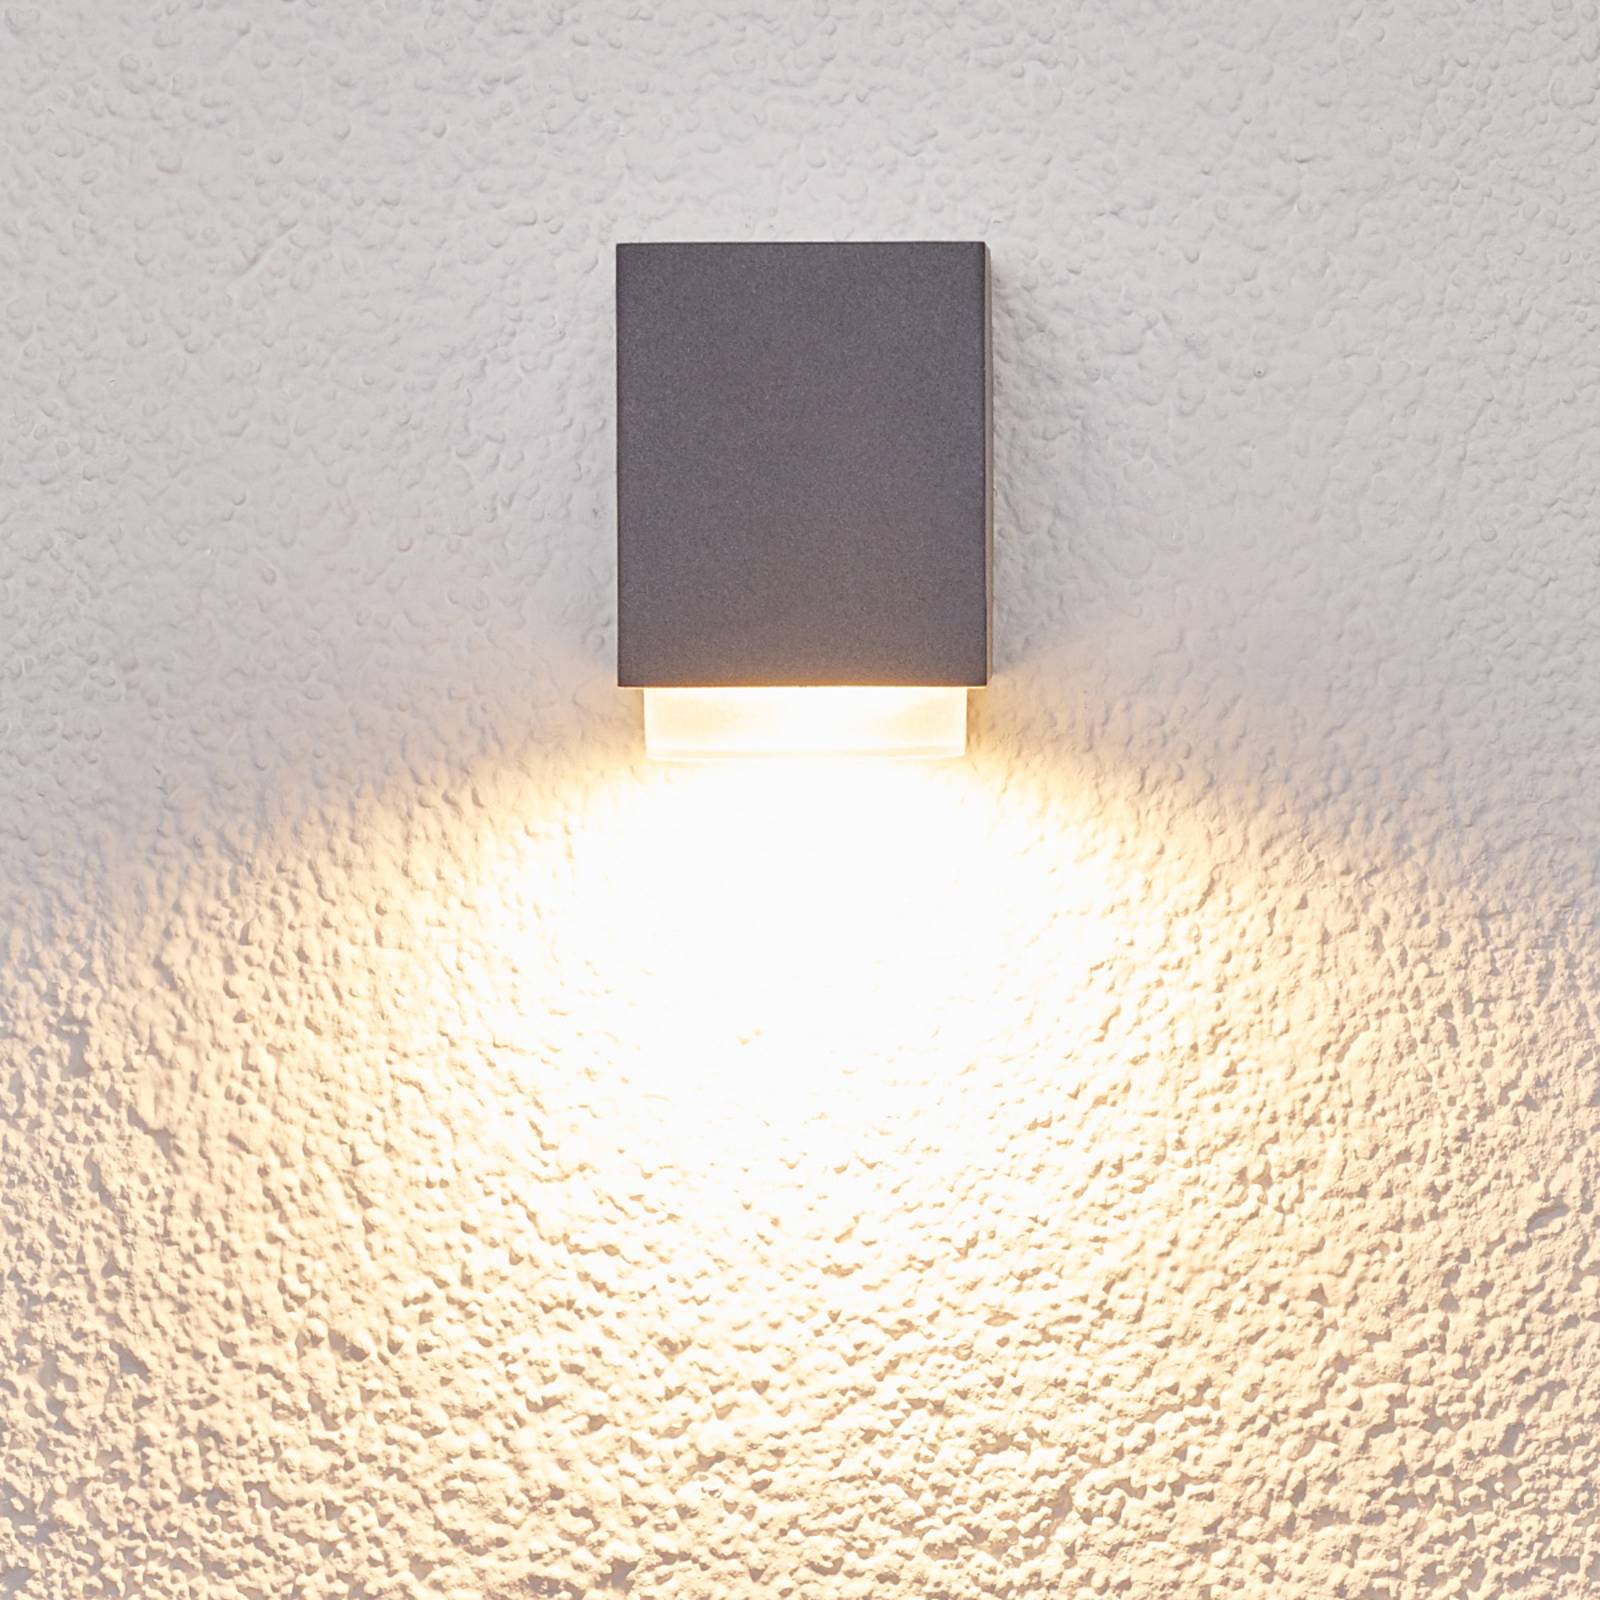 Jovan - Kültéri fali lámpa s.szürke színben